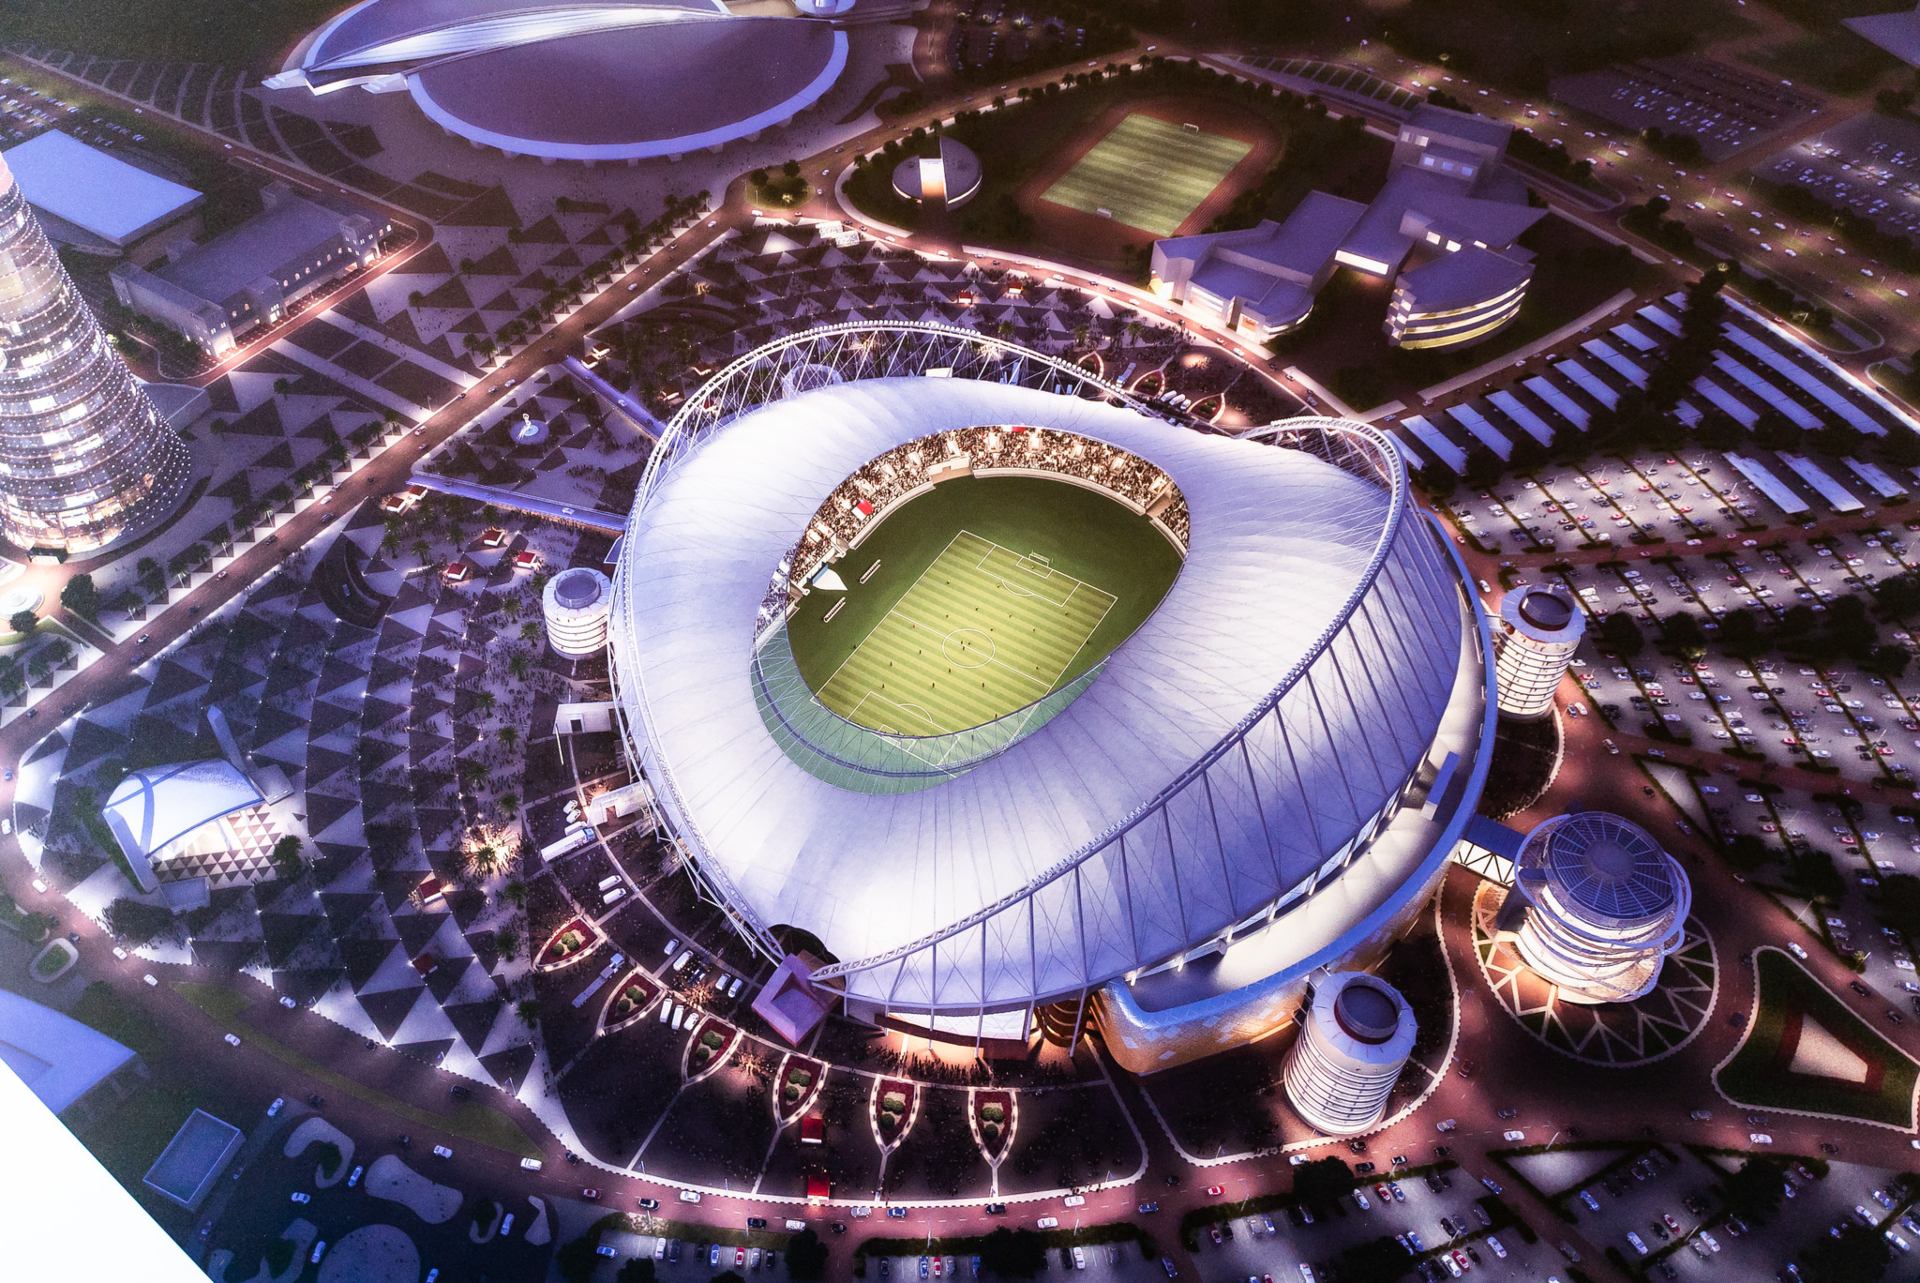 Copa do Mundo 2022: estádios do Catar e quais jogos cada um receberá